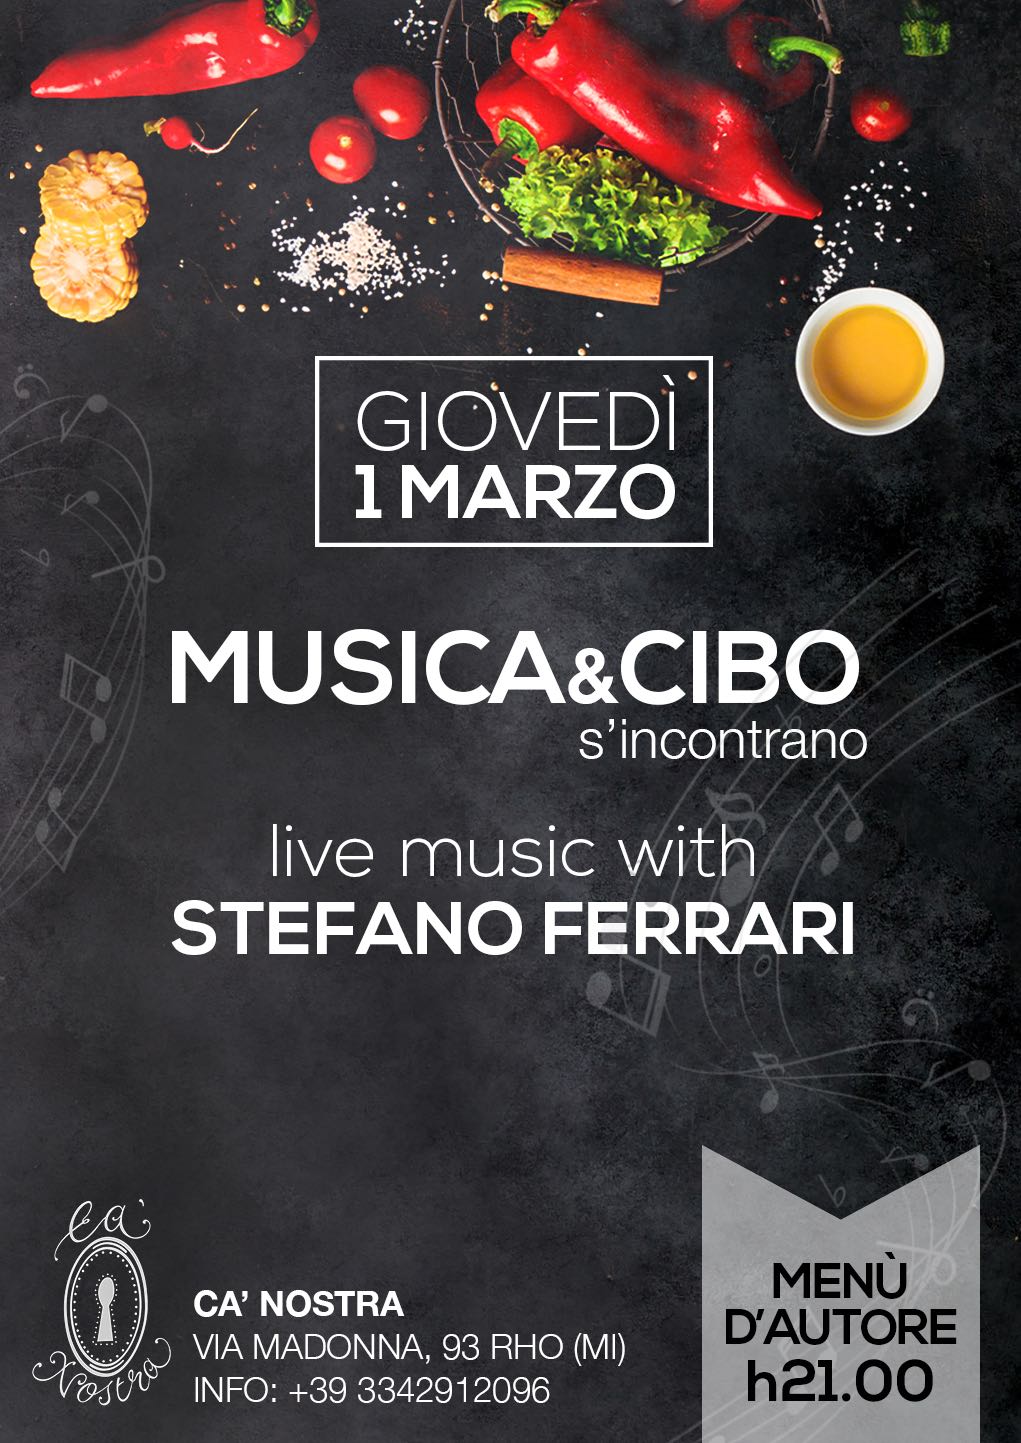 Stefano Ferrari Cantautore: musica e cibo s'incontrano